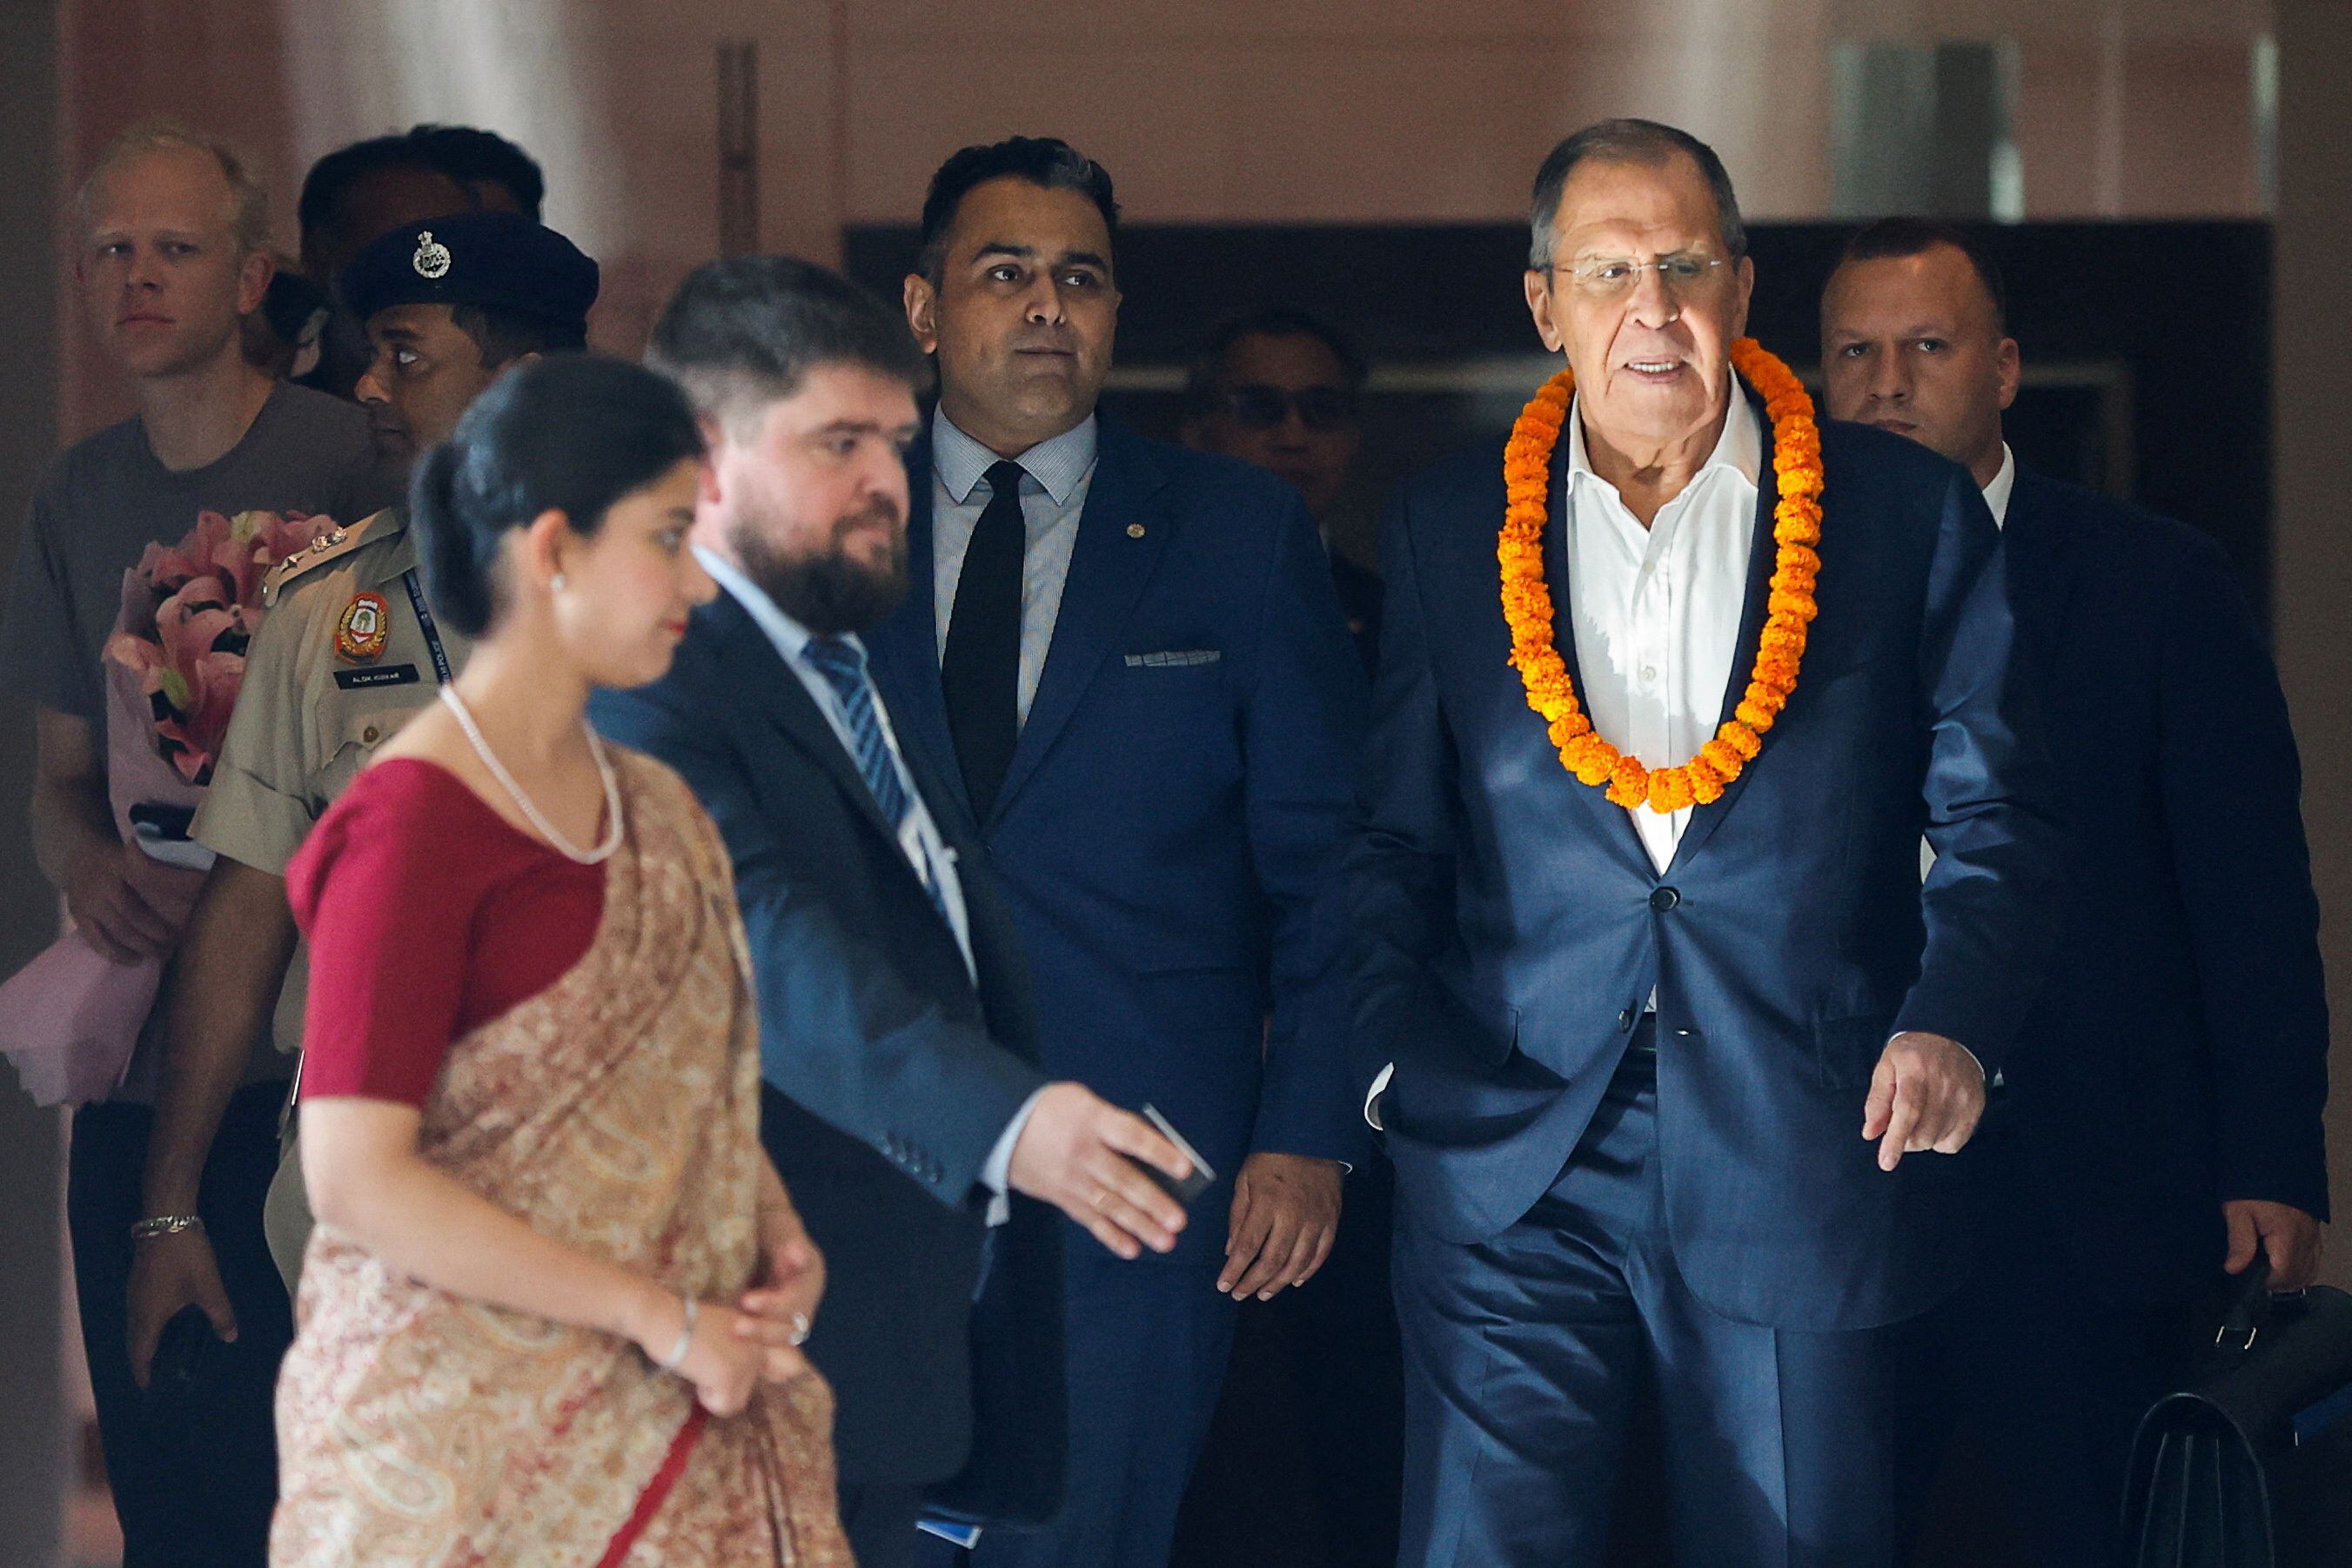 El ministro de Asuntos Exteriores ruso, Sergei Lavrov, llega a un hotel antes de la Cumbre del G20 en Nueva Delhi, India, 8 de septiembre de 2023. Llega en representación de Rusia, ante la ausencia del presidente Vladimir Putin. REUTERS/Amit Dave